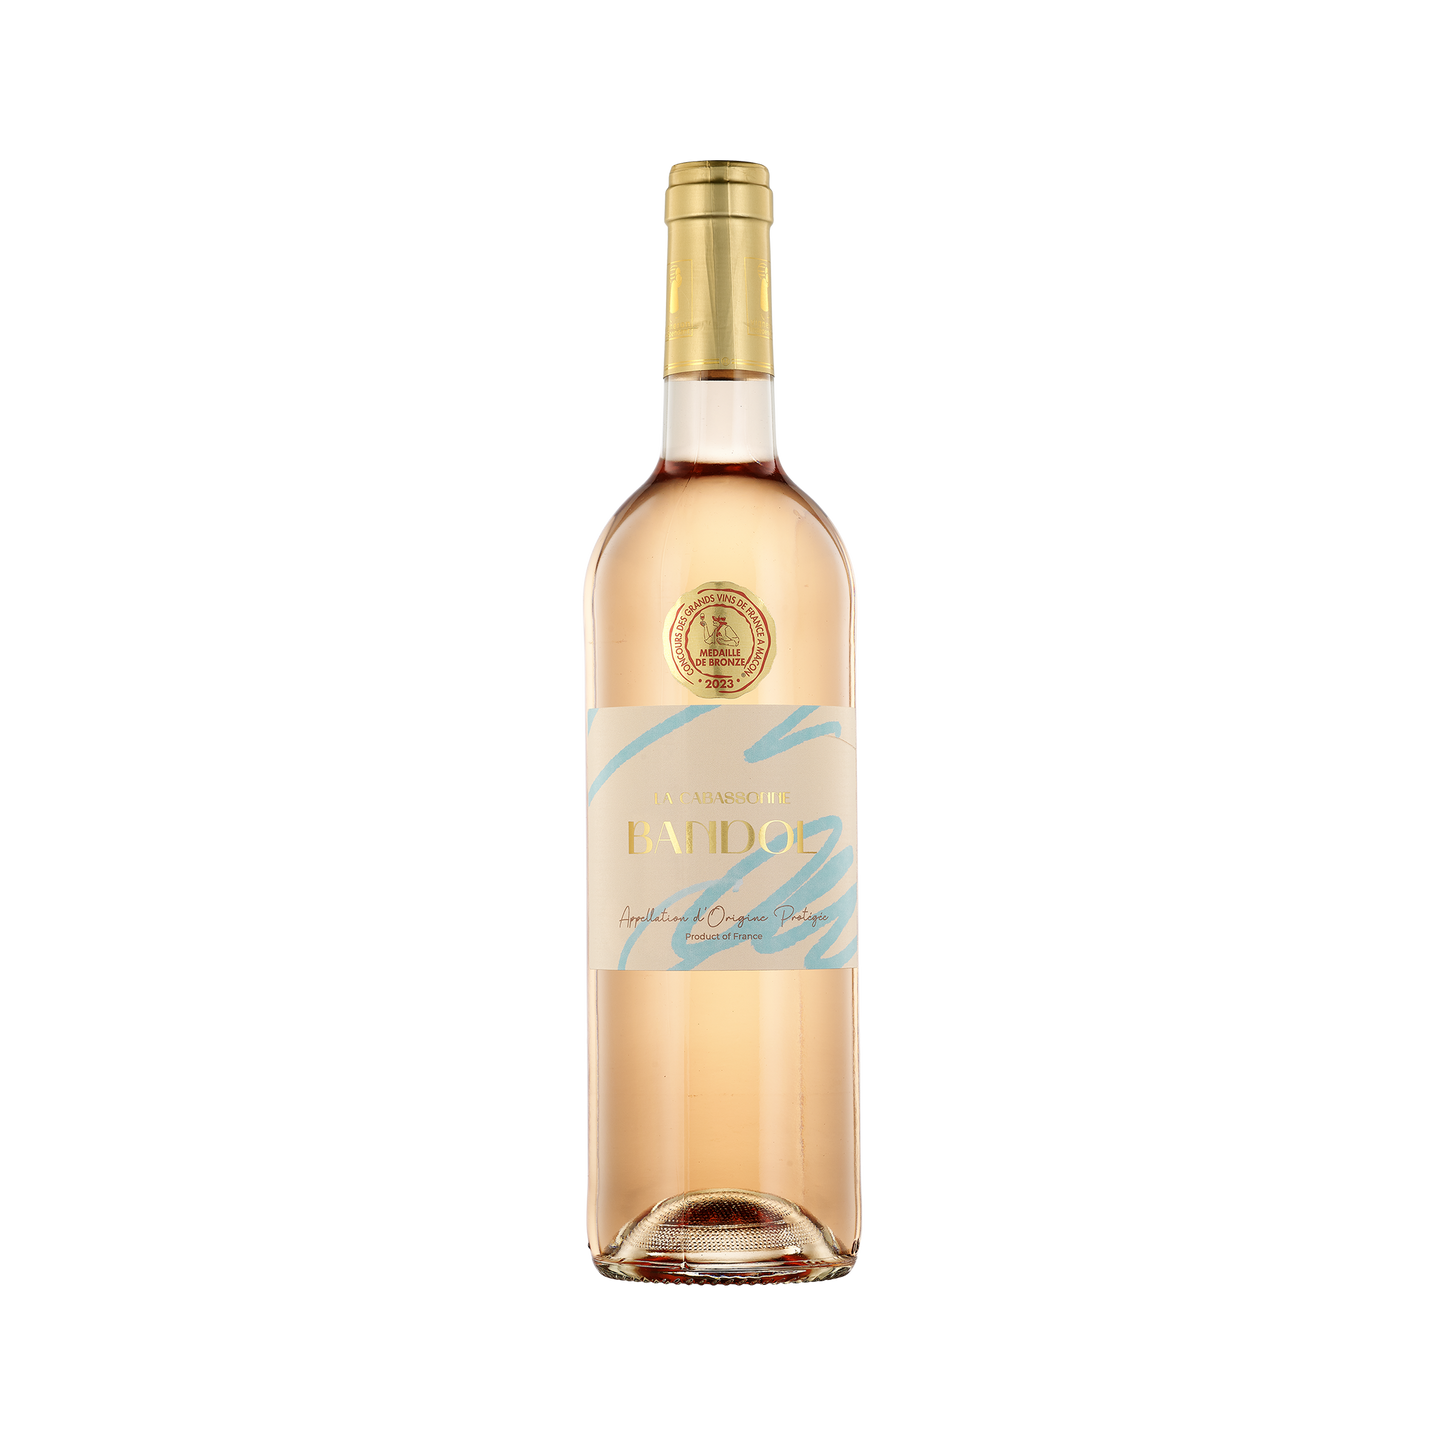 A bottle of La Cabassonne Rose